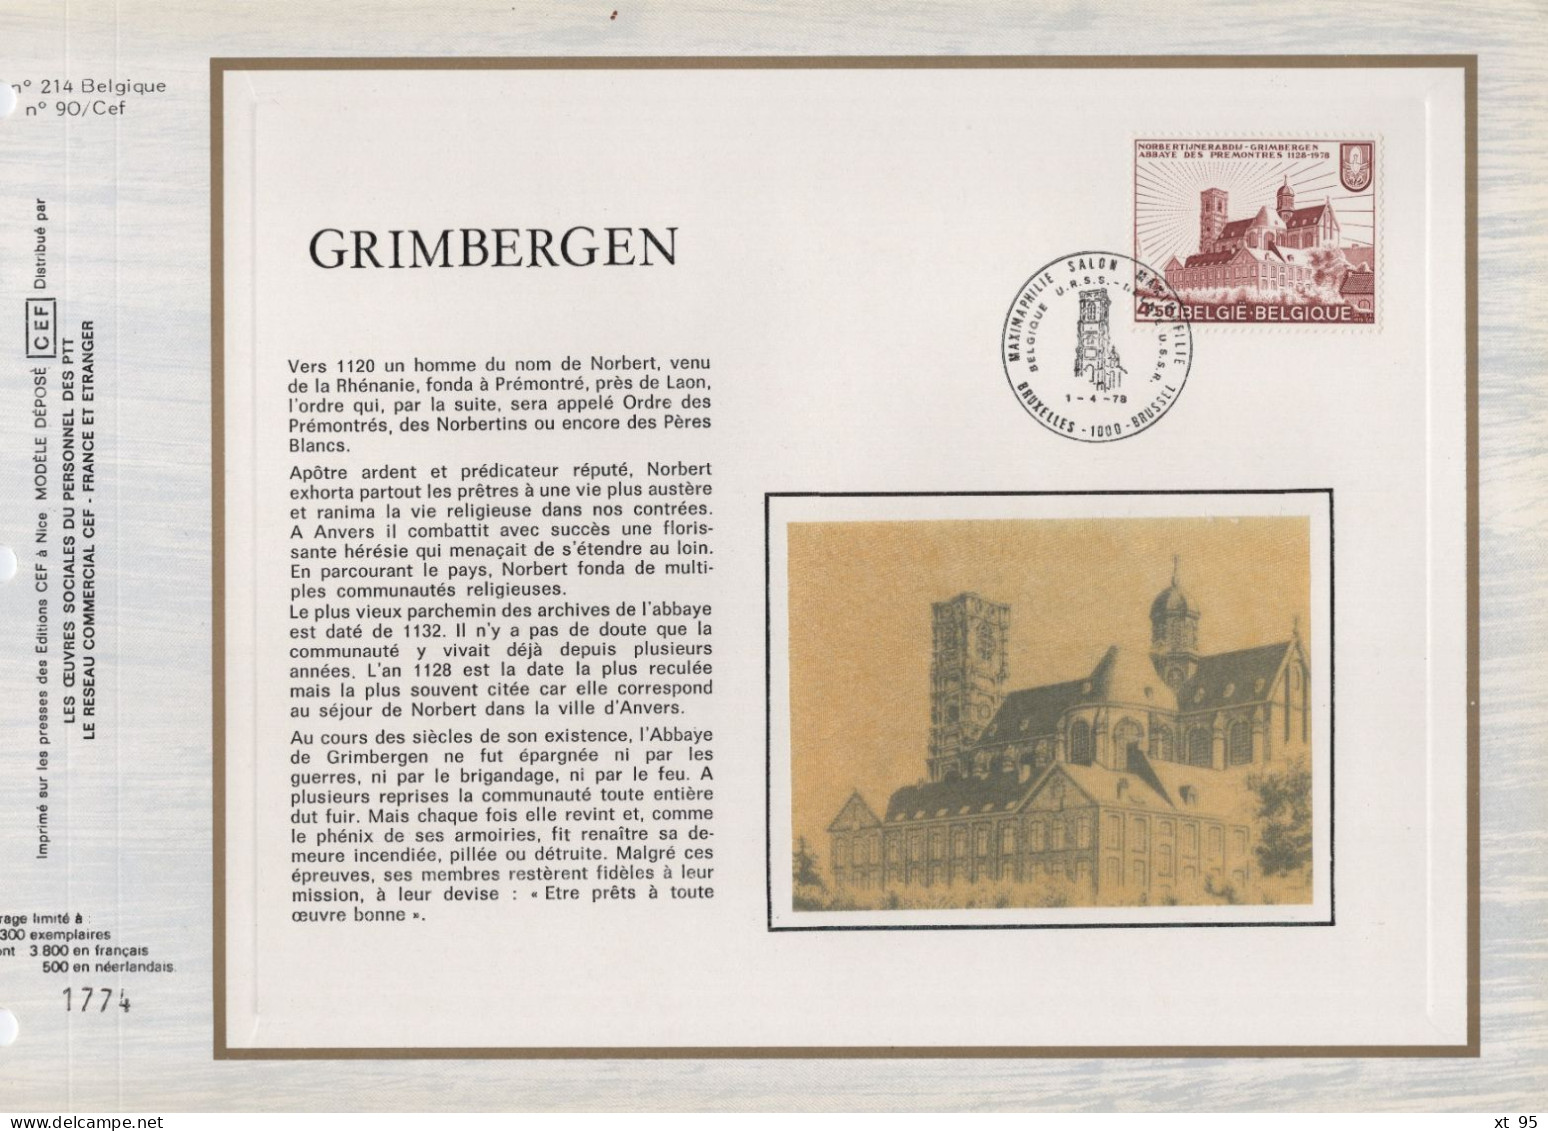 Belgique - CEF N°214 - Grimbergen - 1971-1980